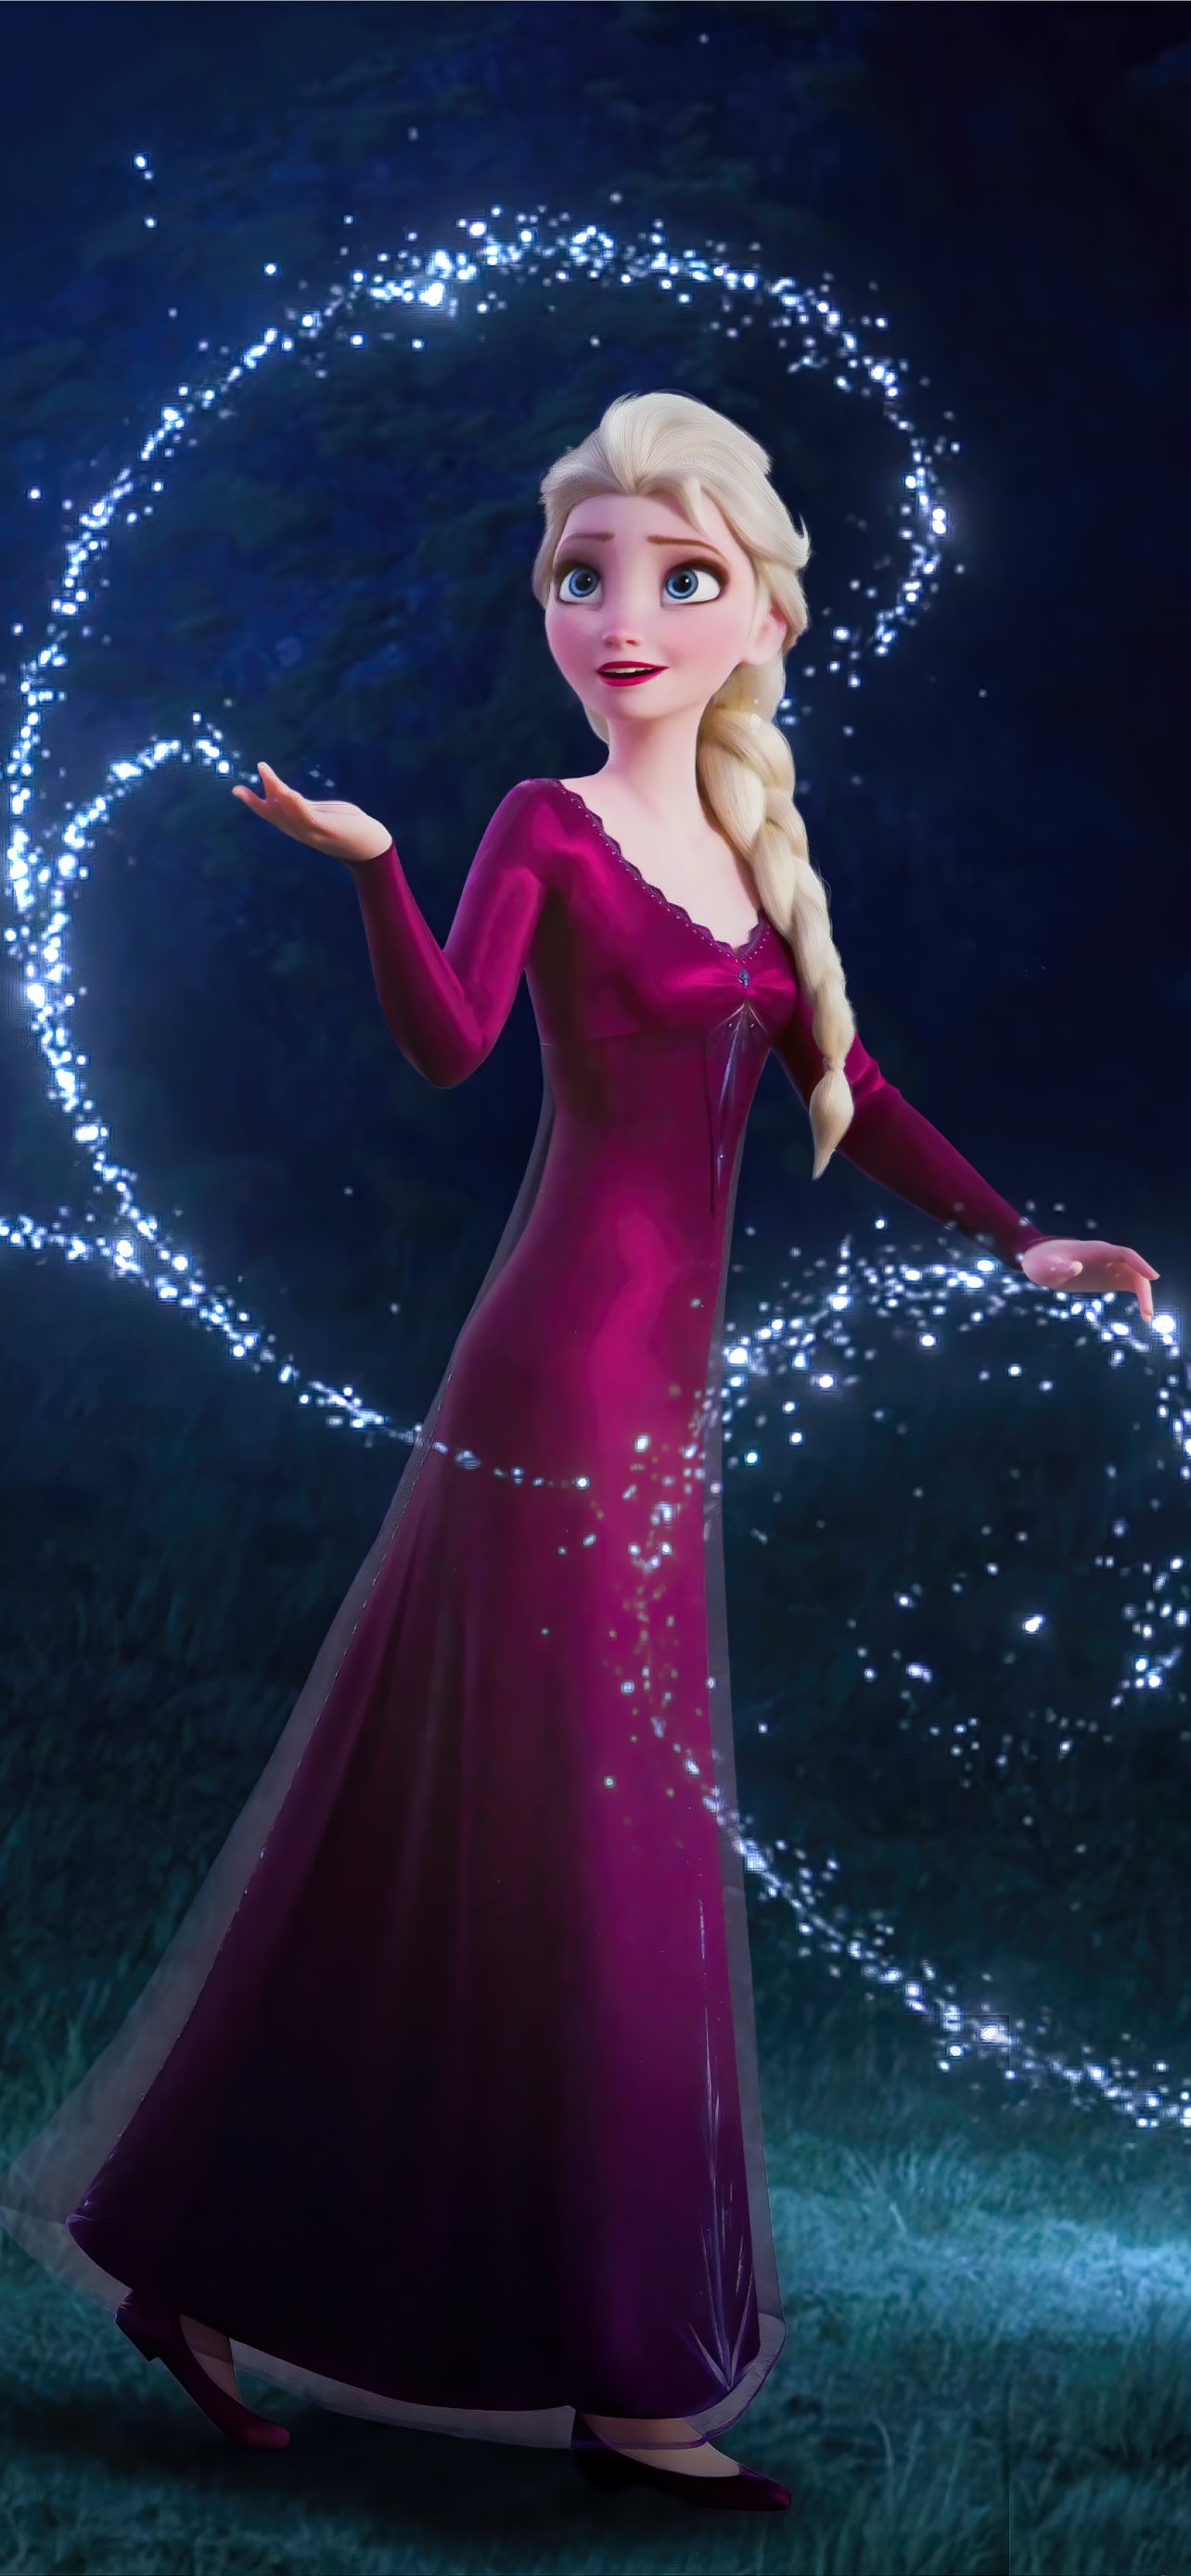 8K ✨ Constable Frozen Elsa ✨ iPhone Wallpapers Free Download